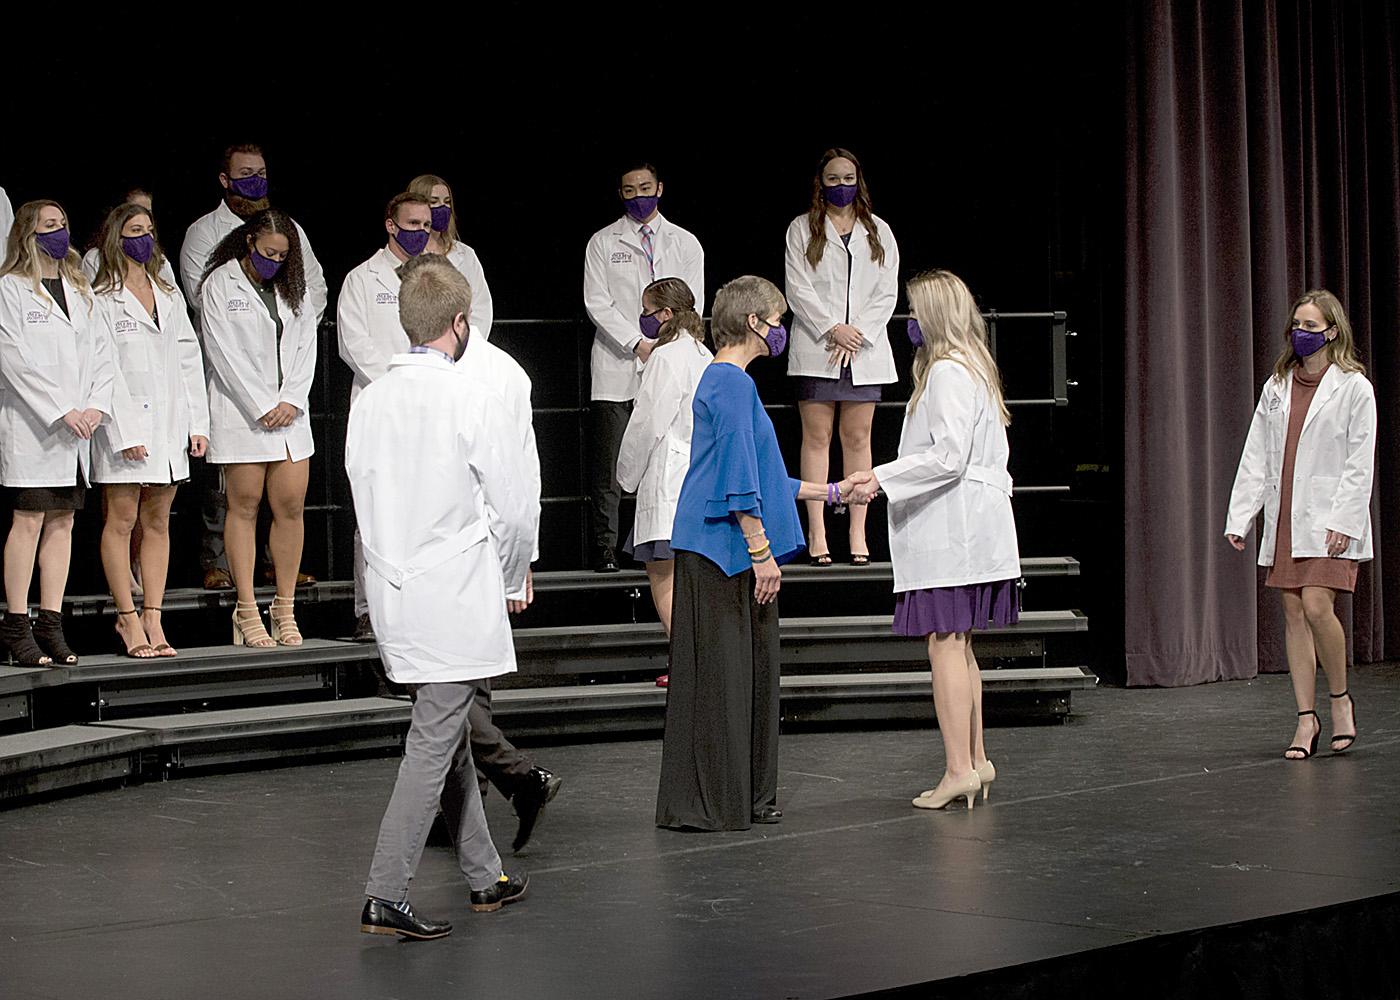 学生们在联合山的PT白大褂仪式上走过舞台